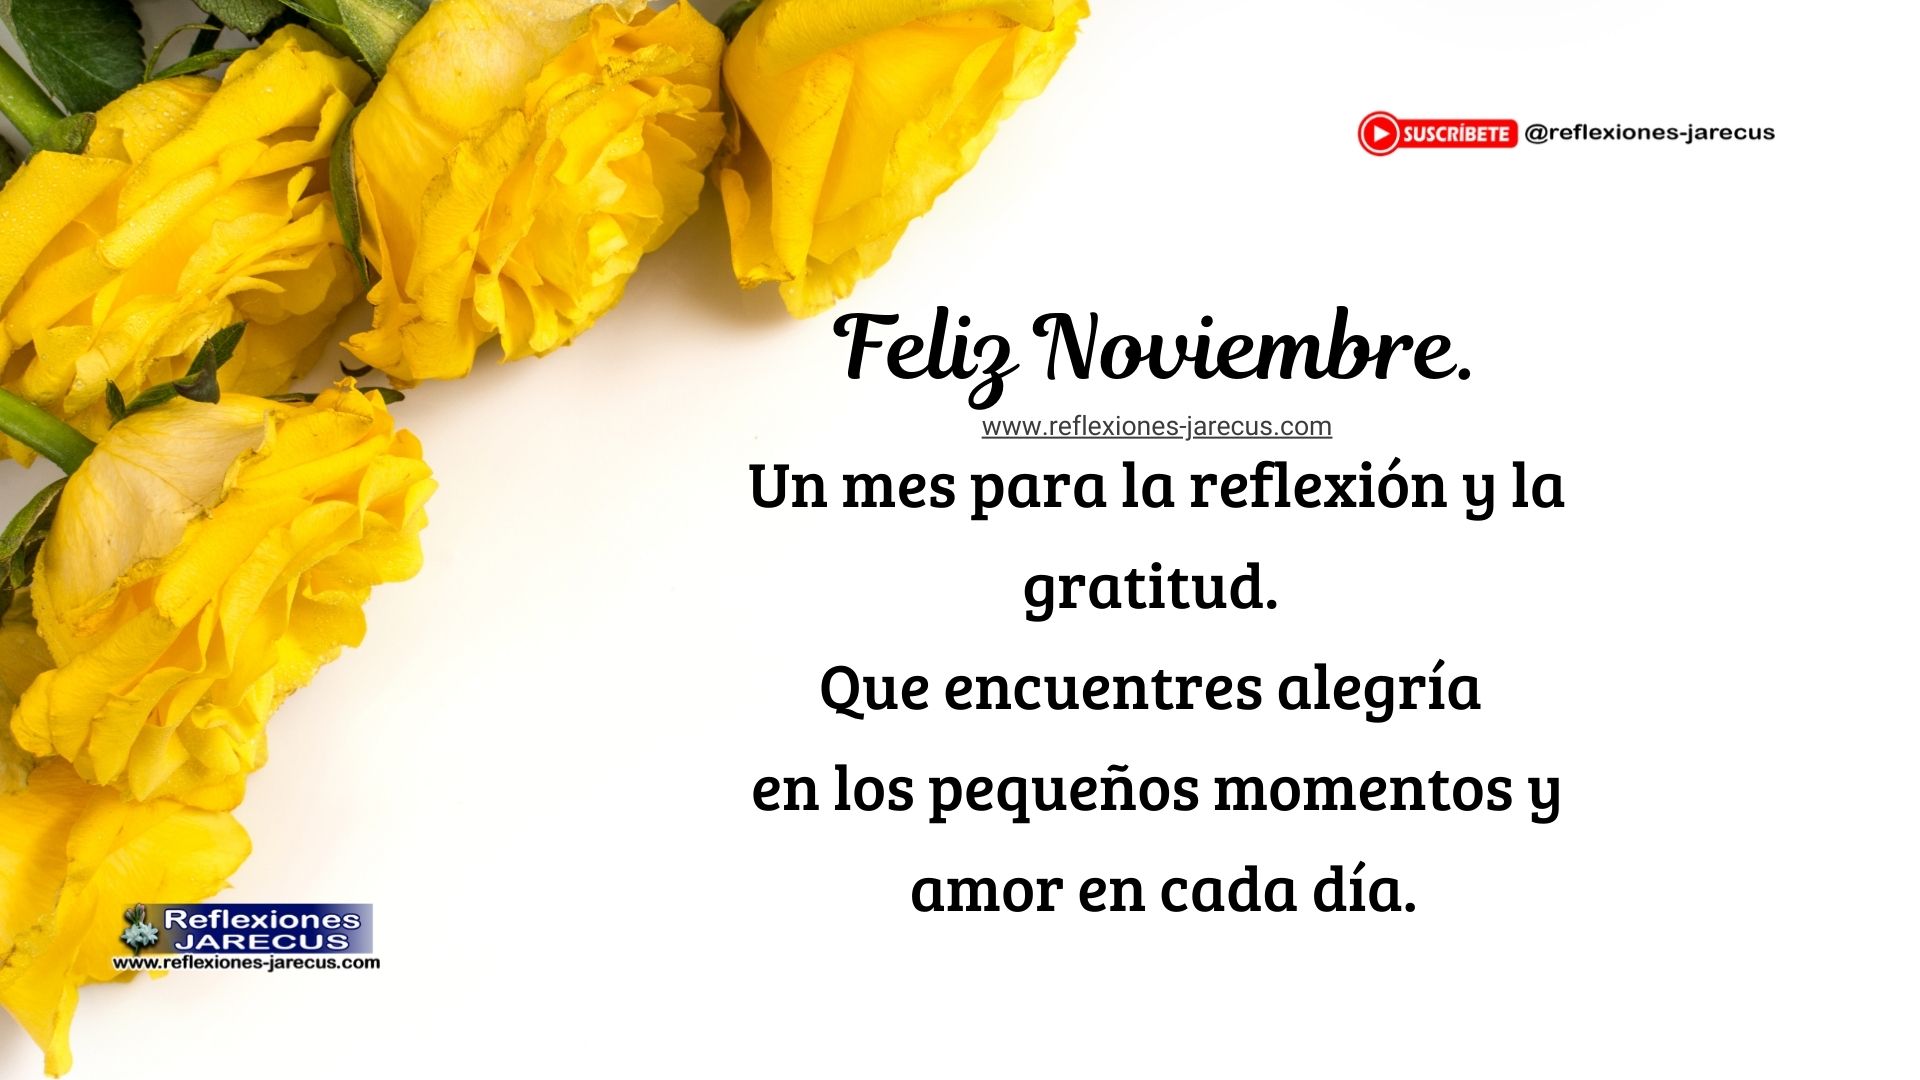 Rosas amarillas en un fondo blanco con la frase "Feliz Noviembre